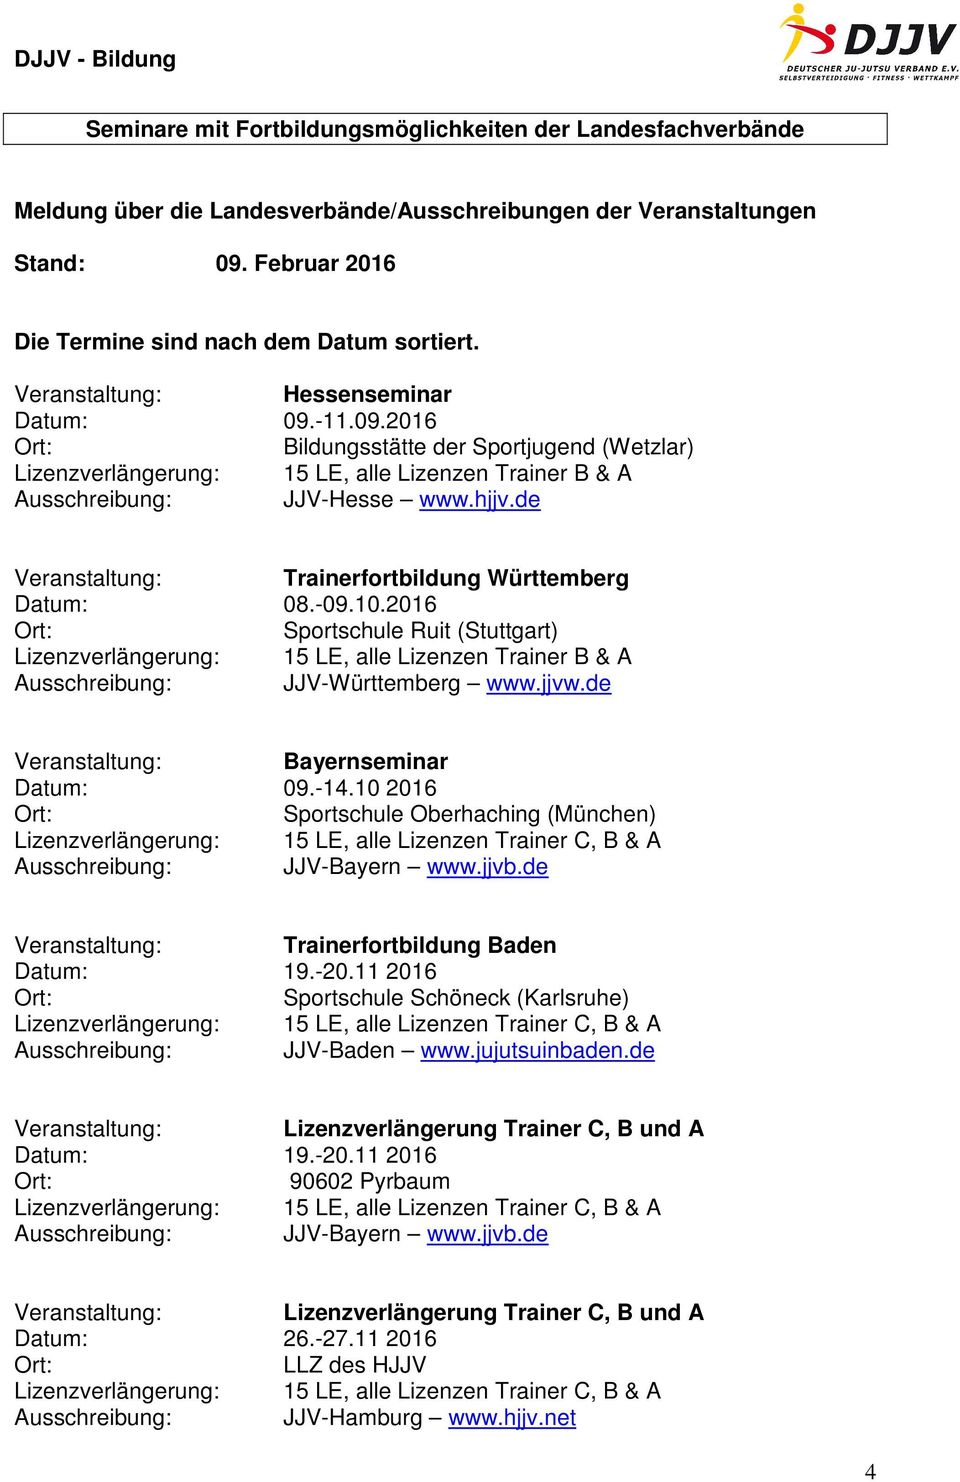 de Veranstaltung: Trainerfortbildung Württemberg Datum: 08.-09.10.2016 Sportschule Ruit (Stuttgart) Lizenzverlängerung: 15 LE, alle Lizenzen Trainer B & A Ausschreibung: JJV-Württemberg www.jjvw.